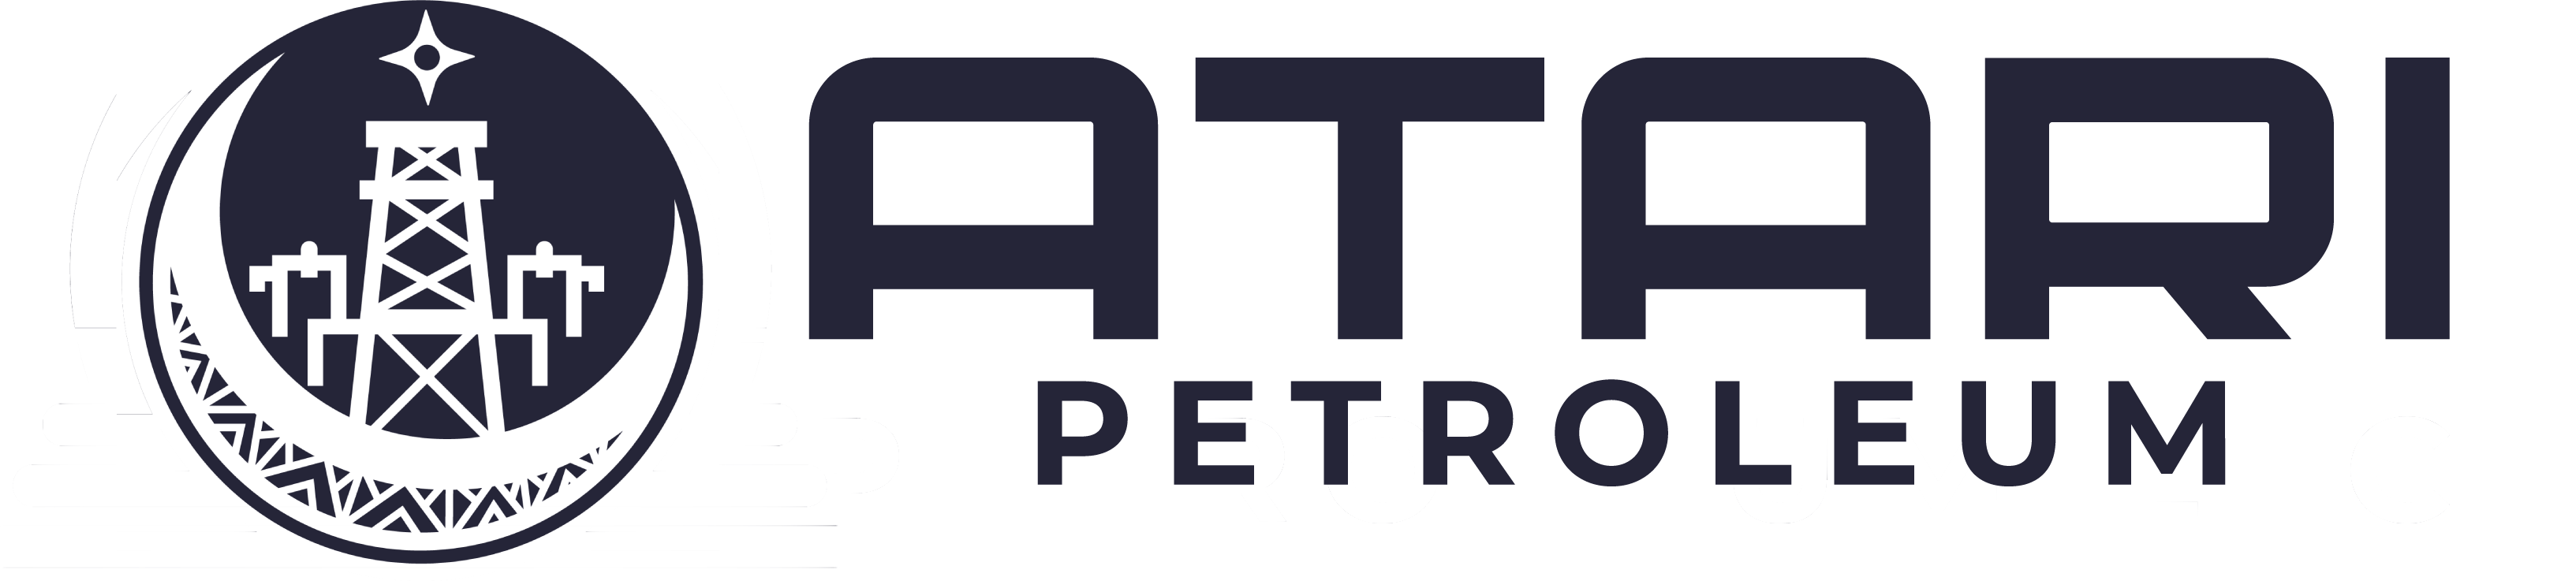 Atari Petroleum LLC